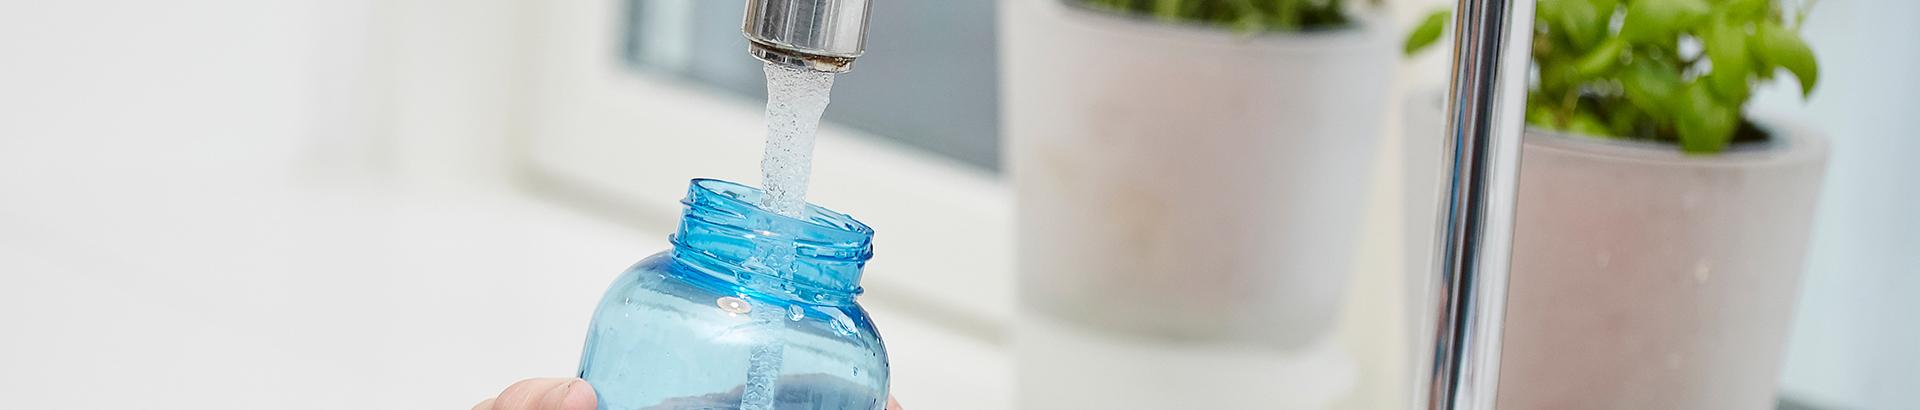 Vandflaske der tappes vand i fra vandhane